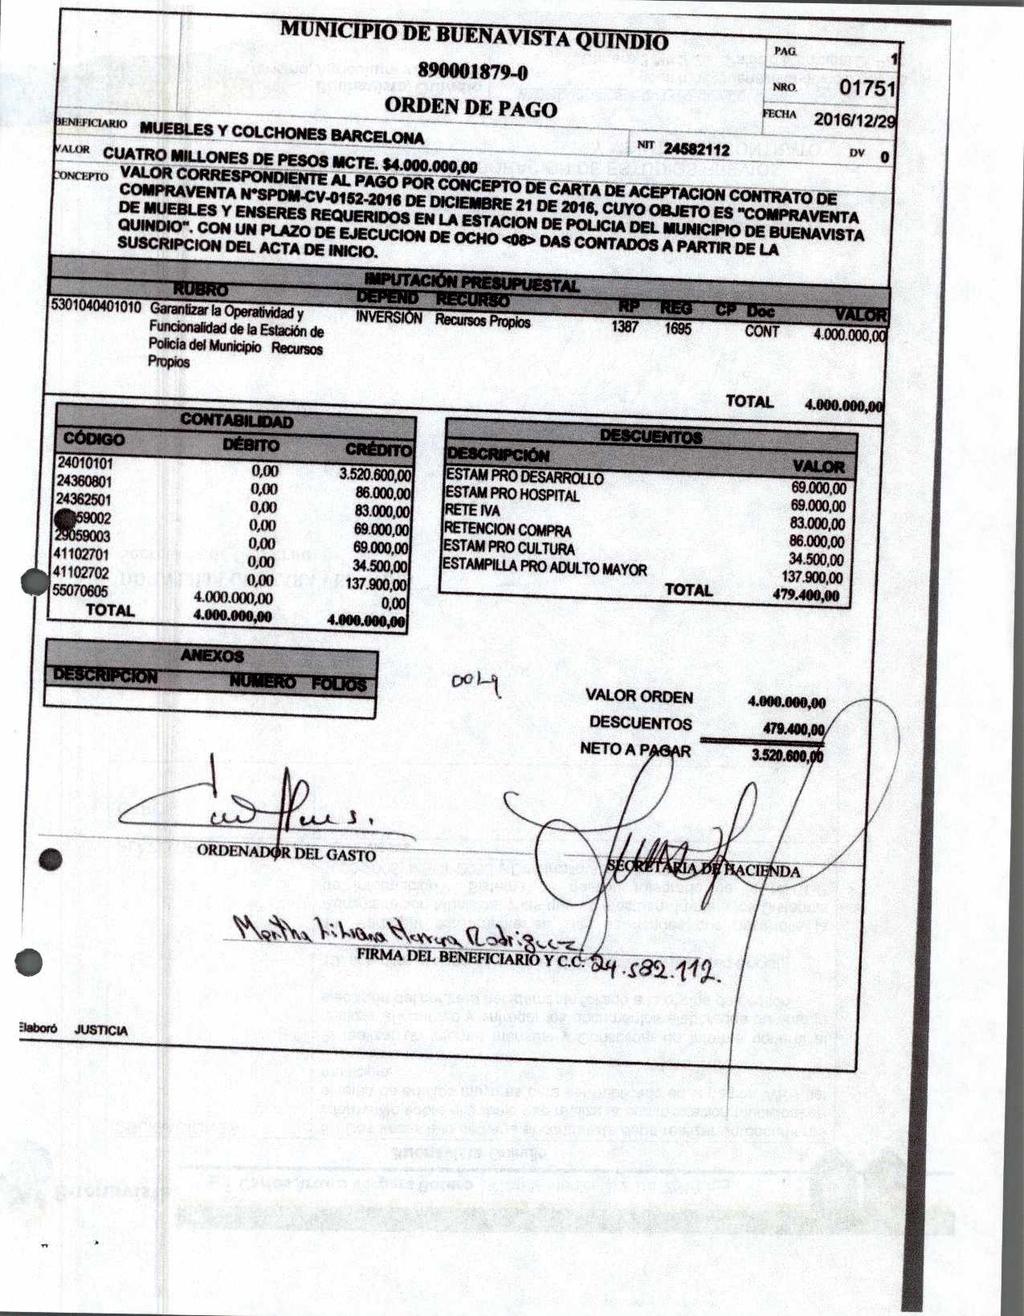 ORDEN DE PAGO -re-fiamtm mueauly COLCHONES BARCELONA Nn 24682111 Awit CUATRO MILLONES DE PESOS /AME $4000.